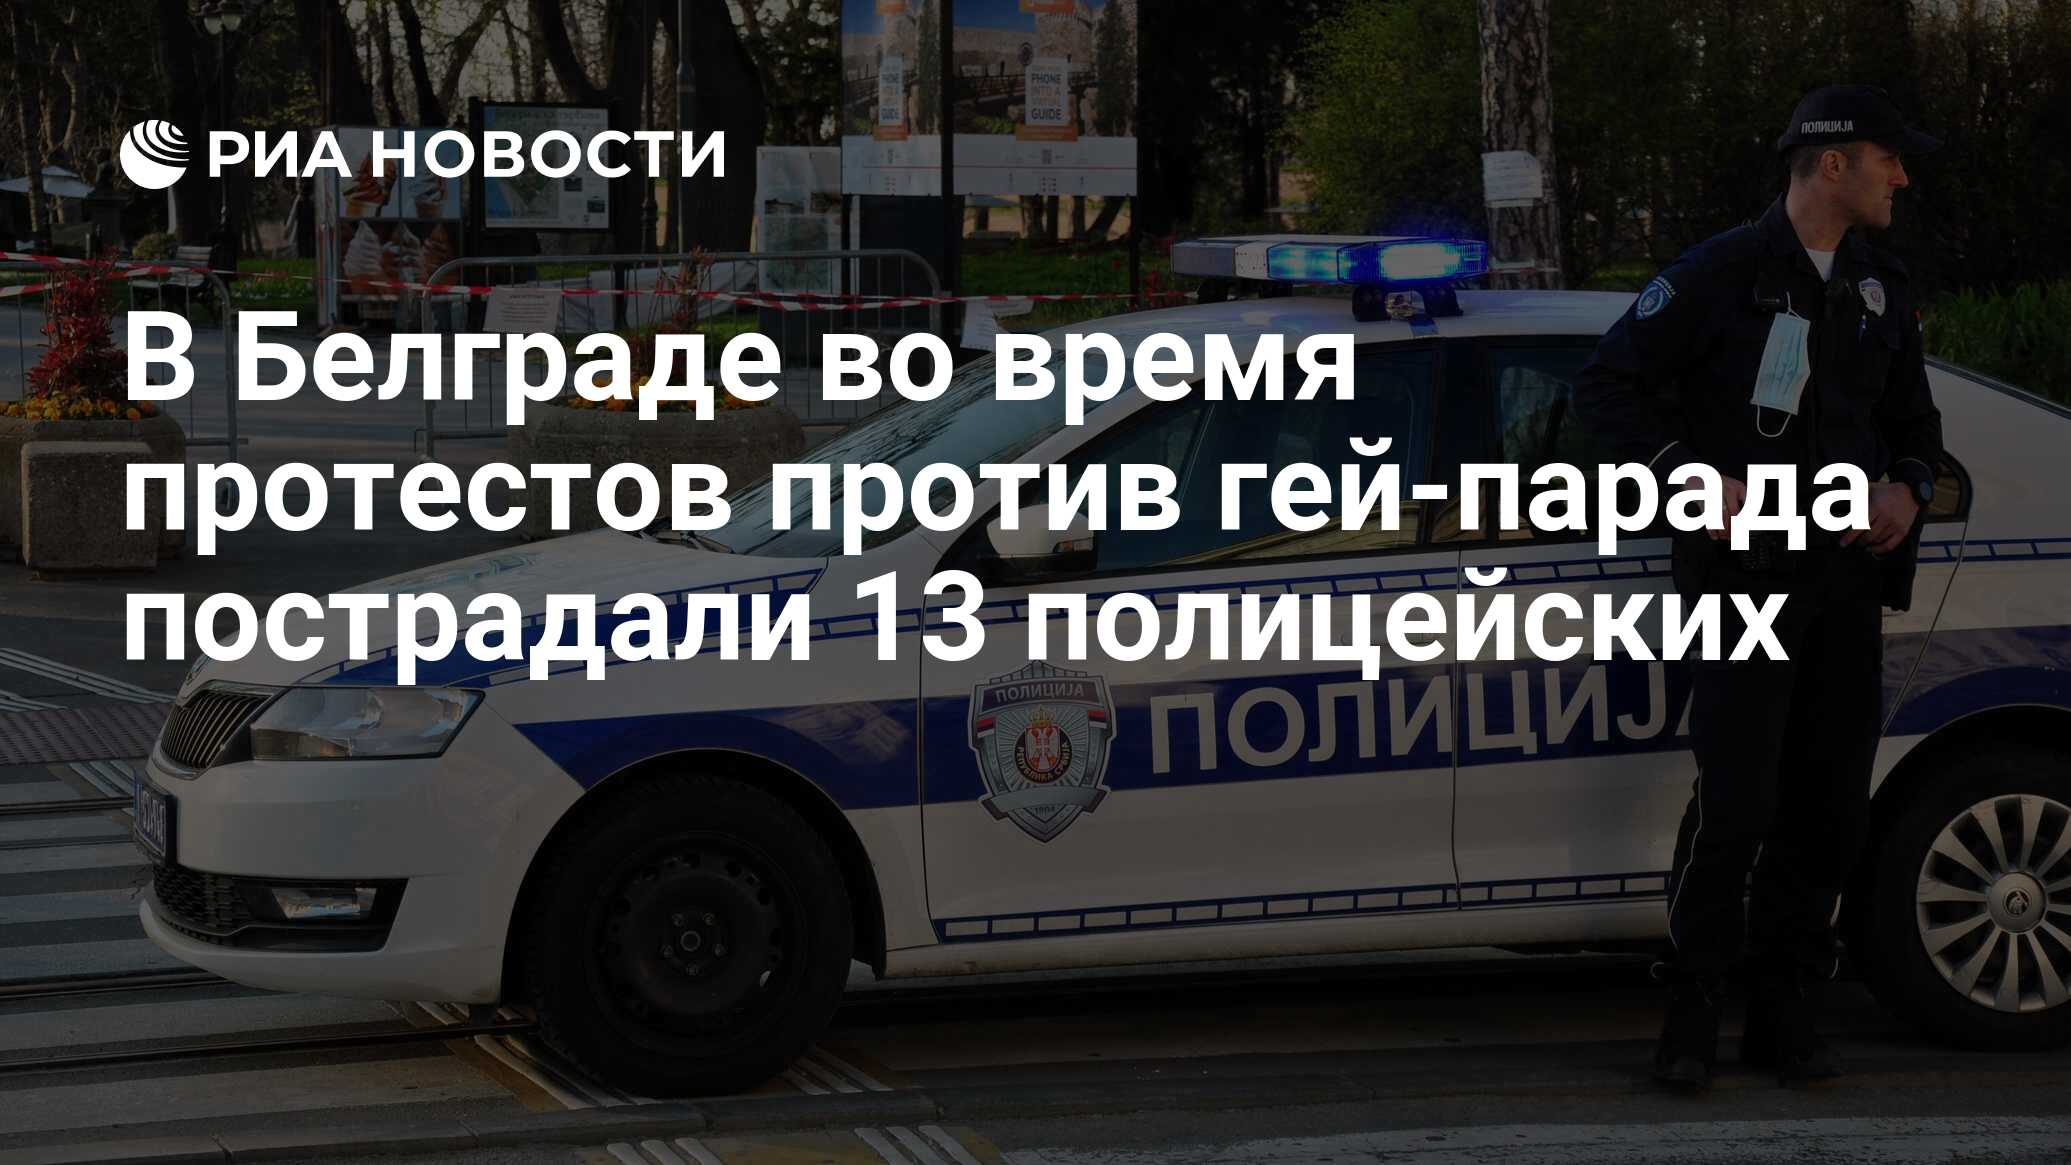 В Белграде во время протестов против гей-парада пострадали 13 полицейских -  РИА Новости, 18.09.2022